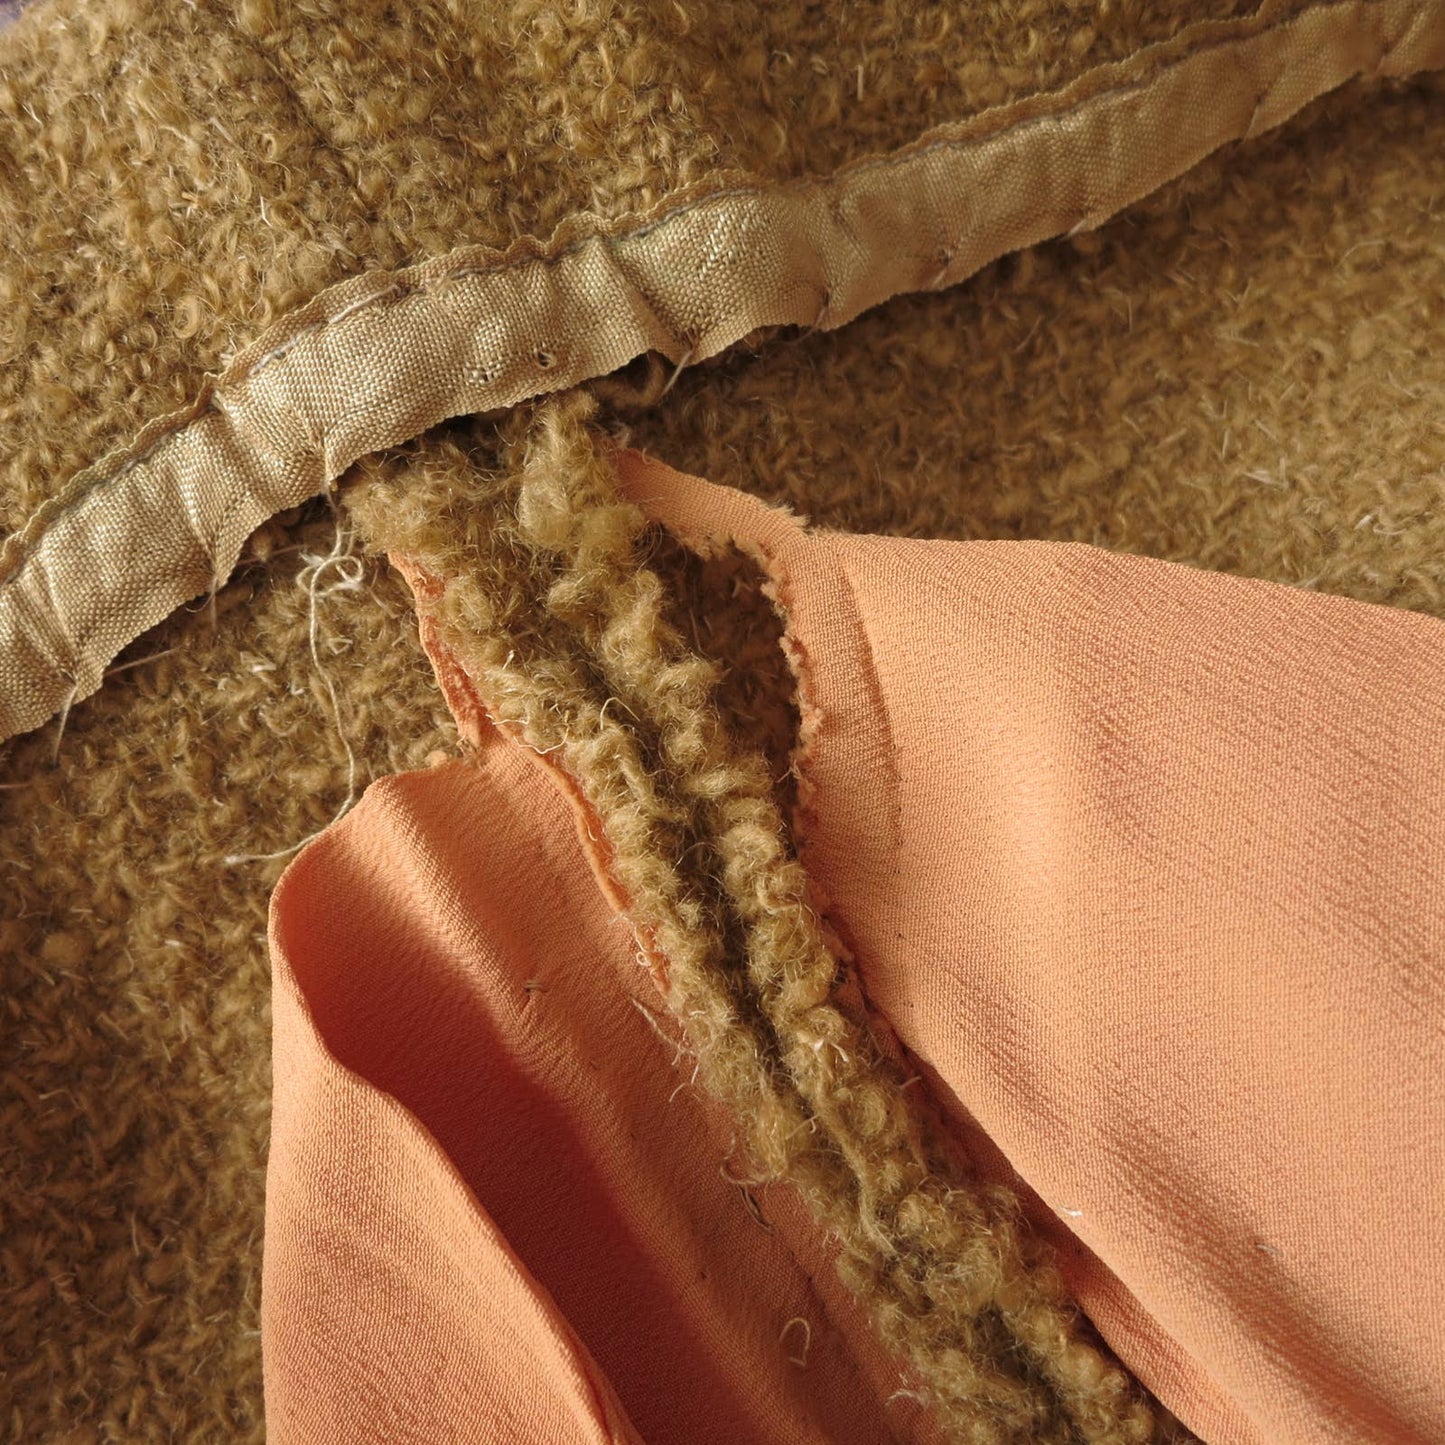 50s Vintage I.Magnin Fur Trimmed Camel Boucle' Wool Skirt Suit M